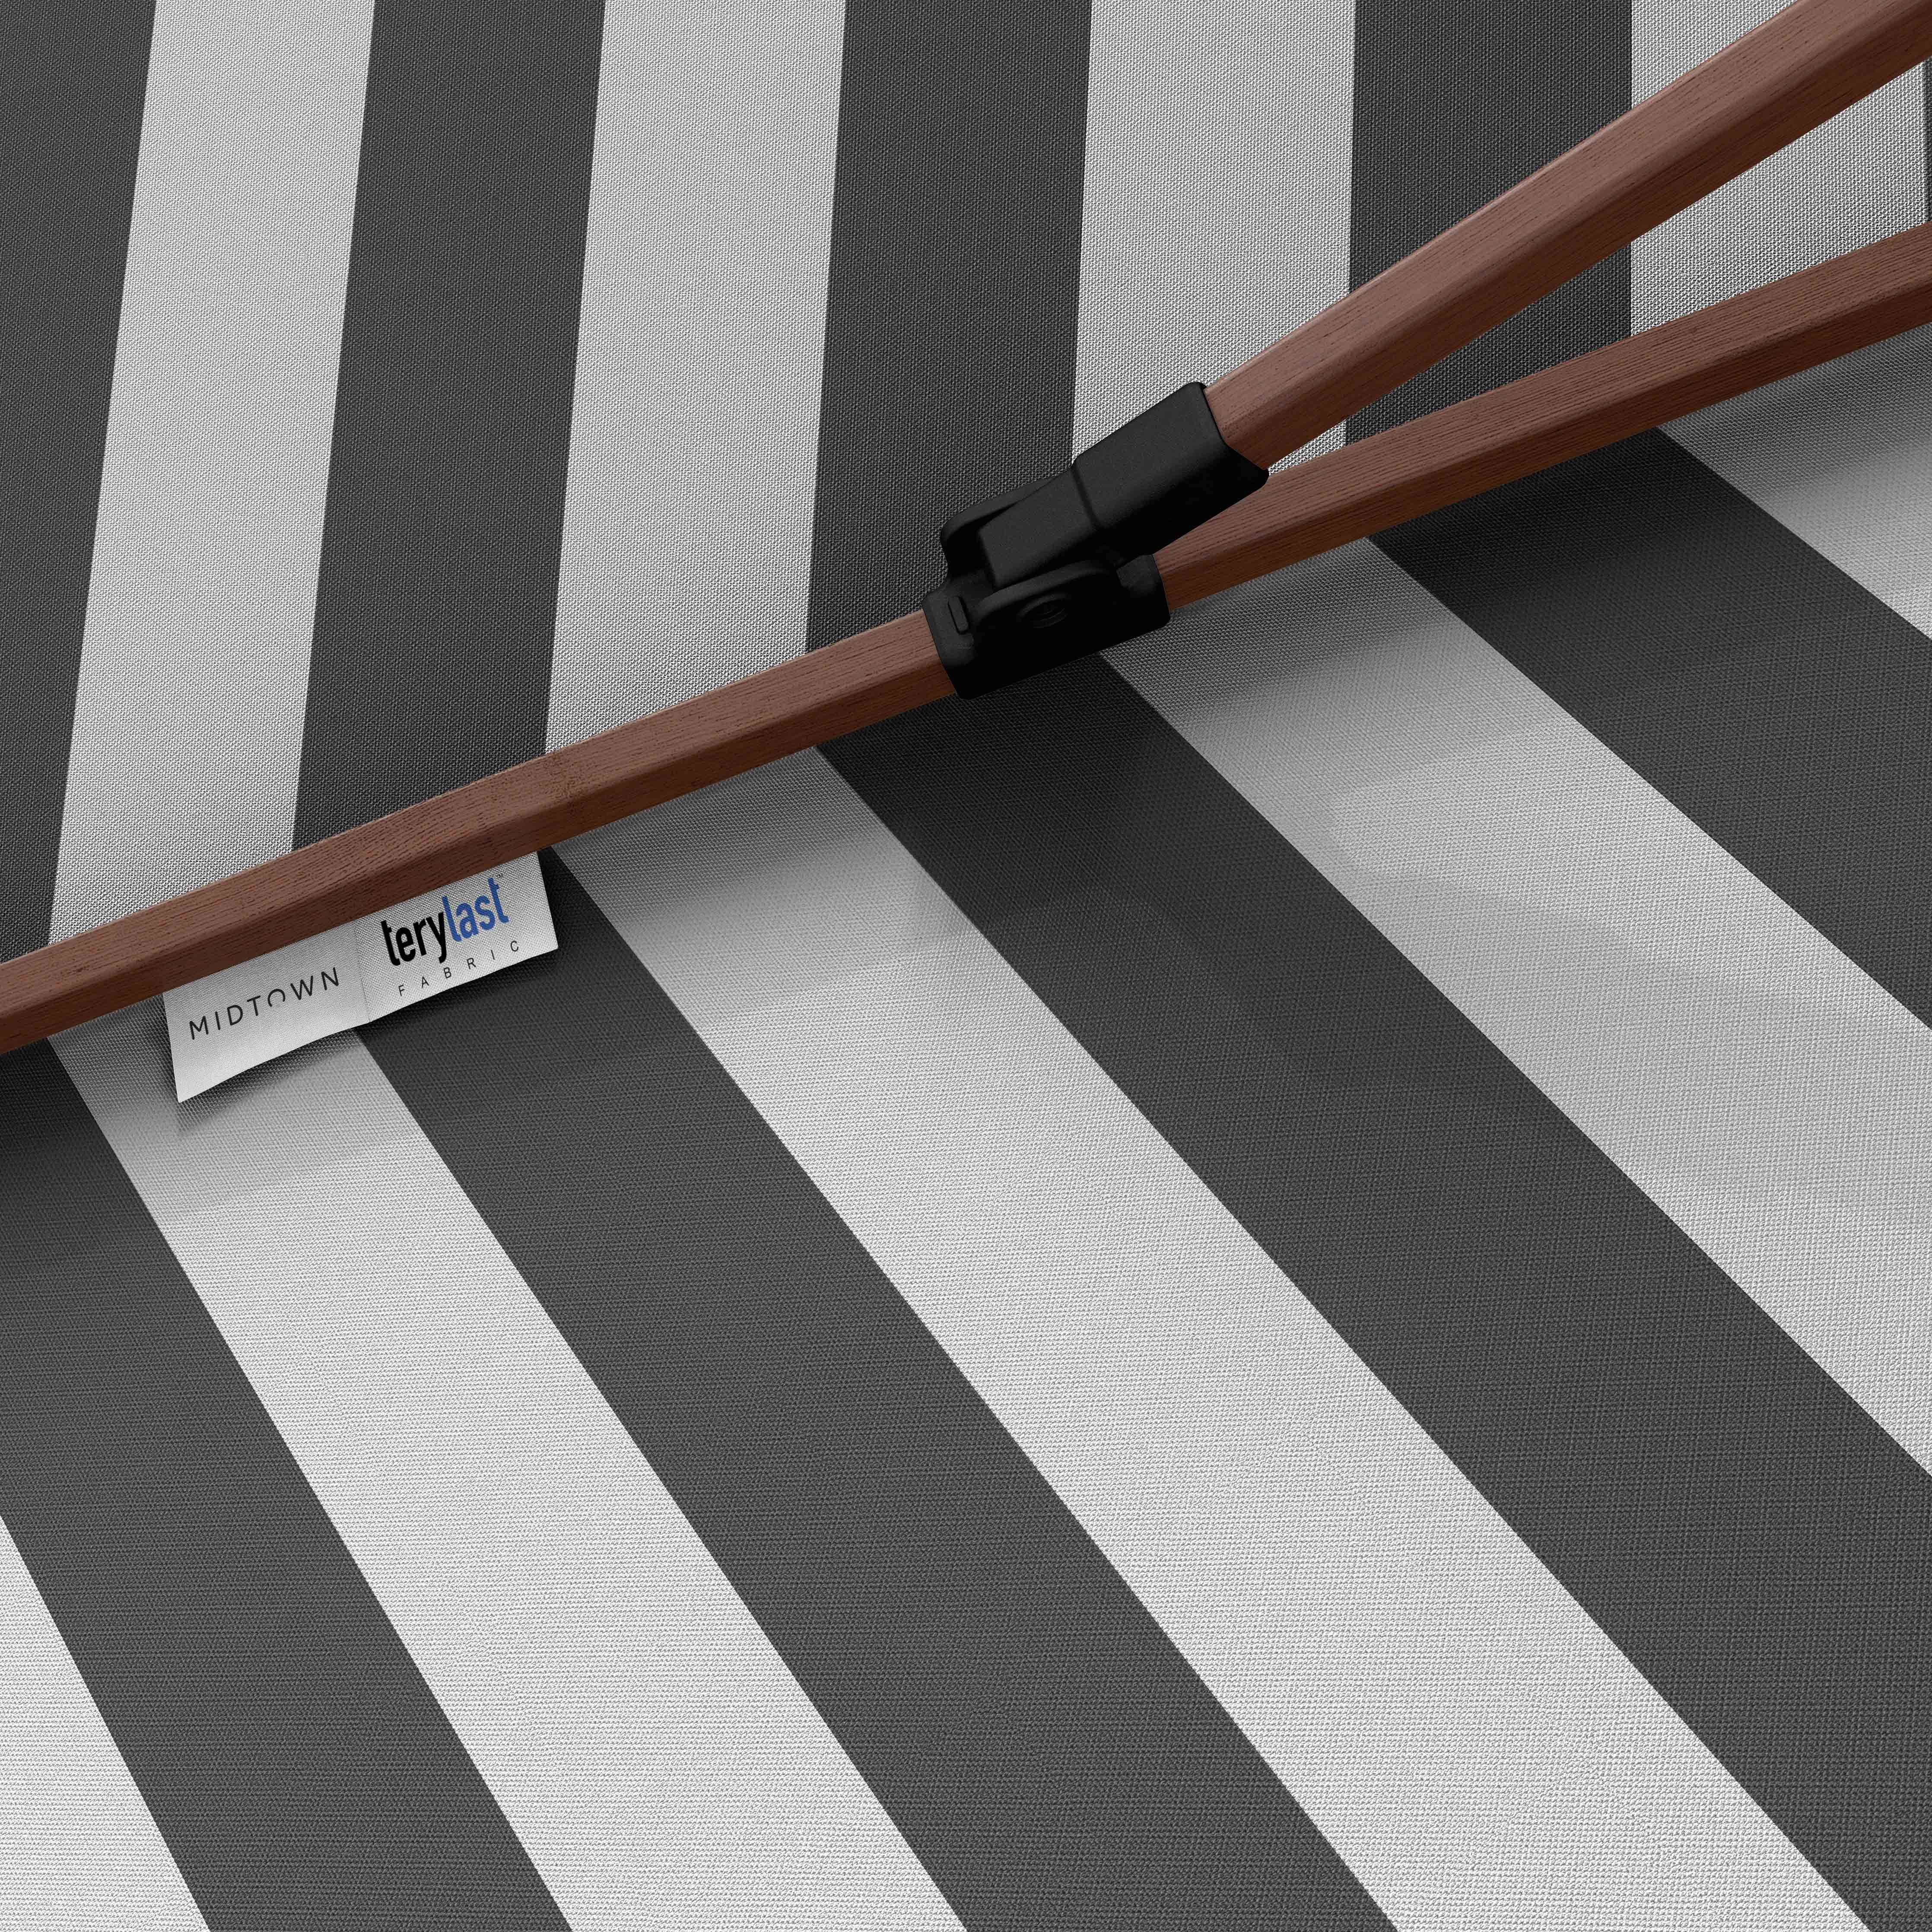 The Wooden 2™ - Terylast Matter Stripes